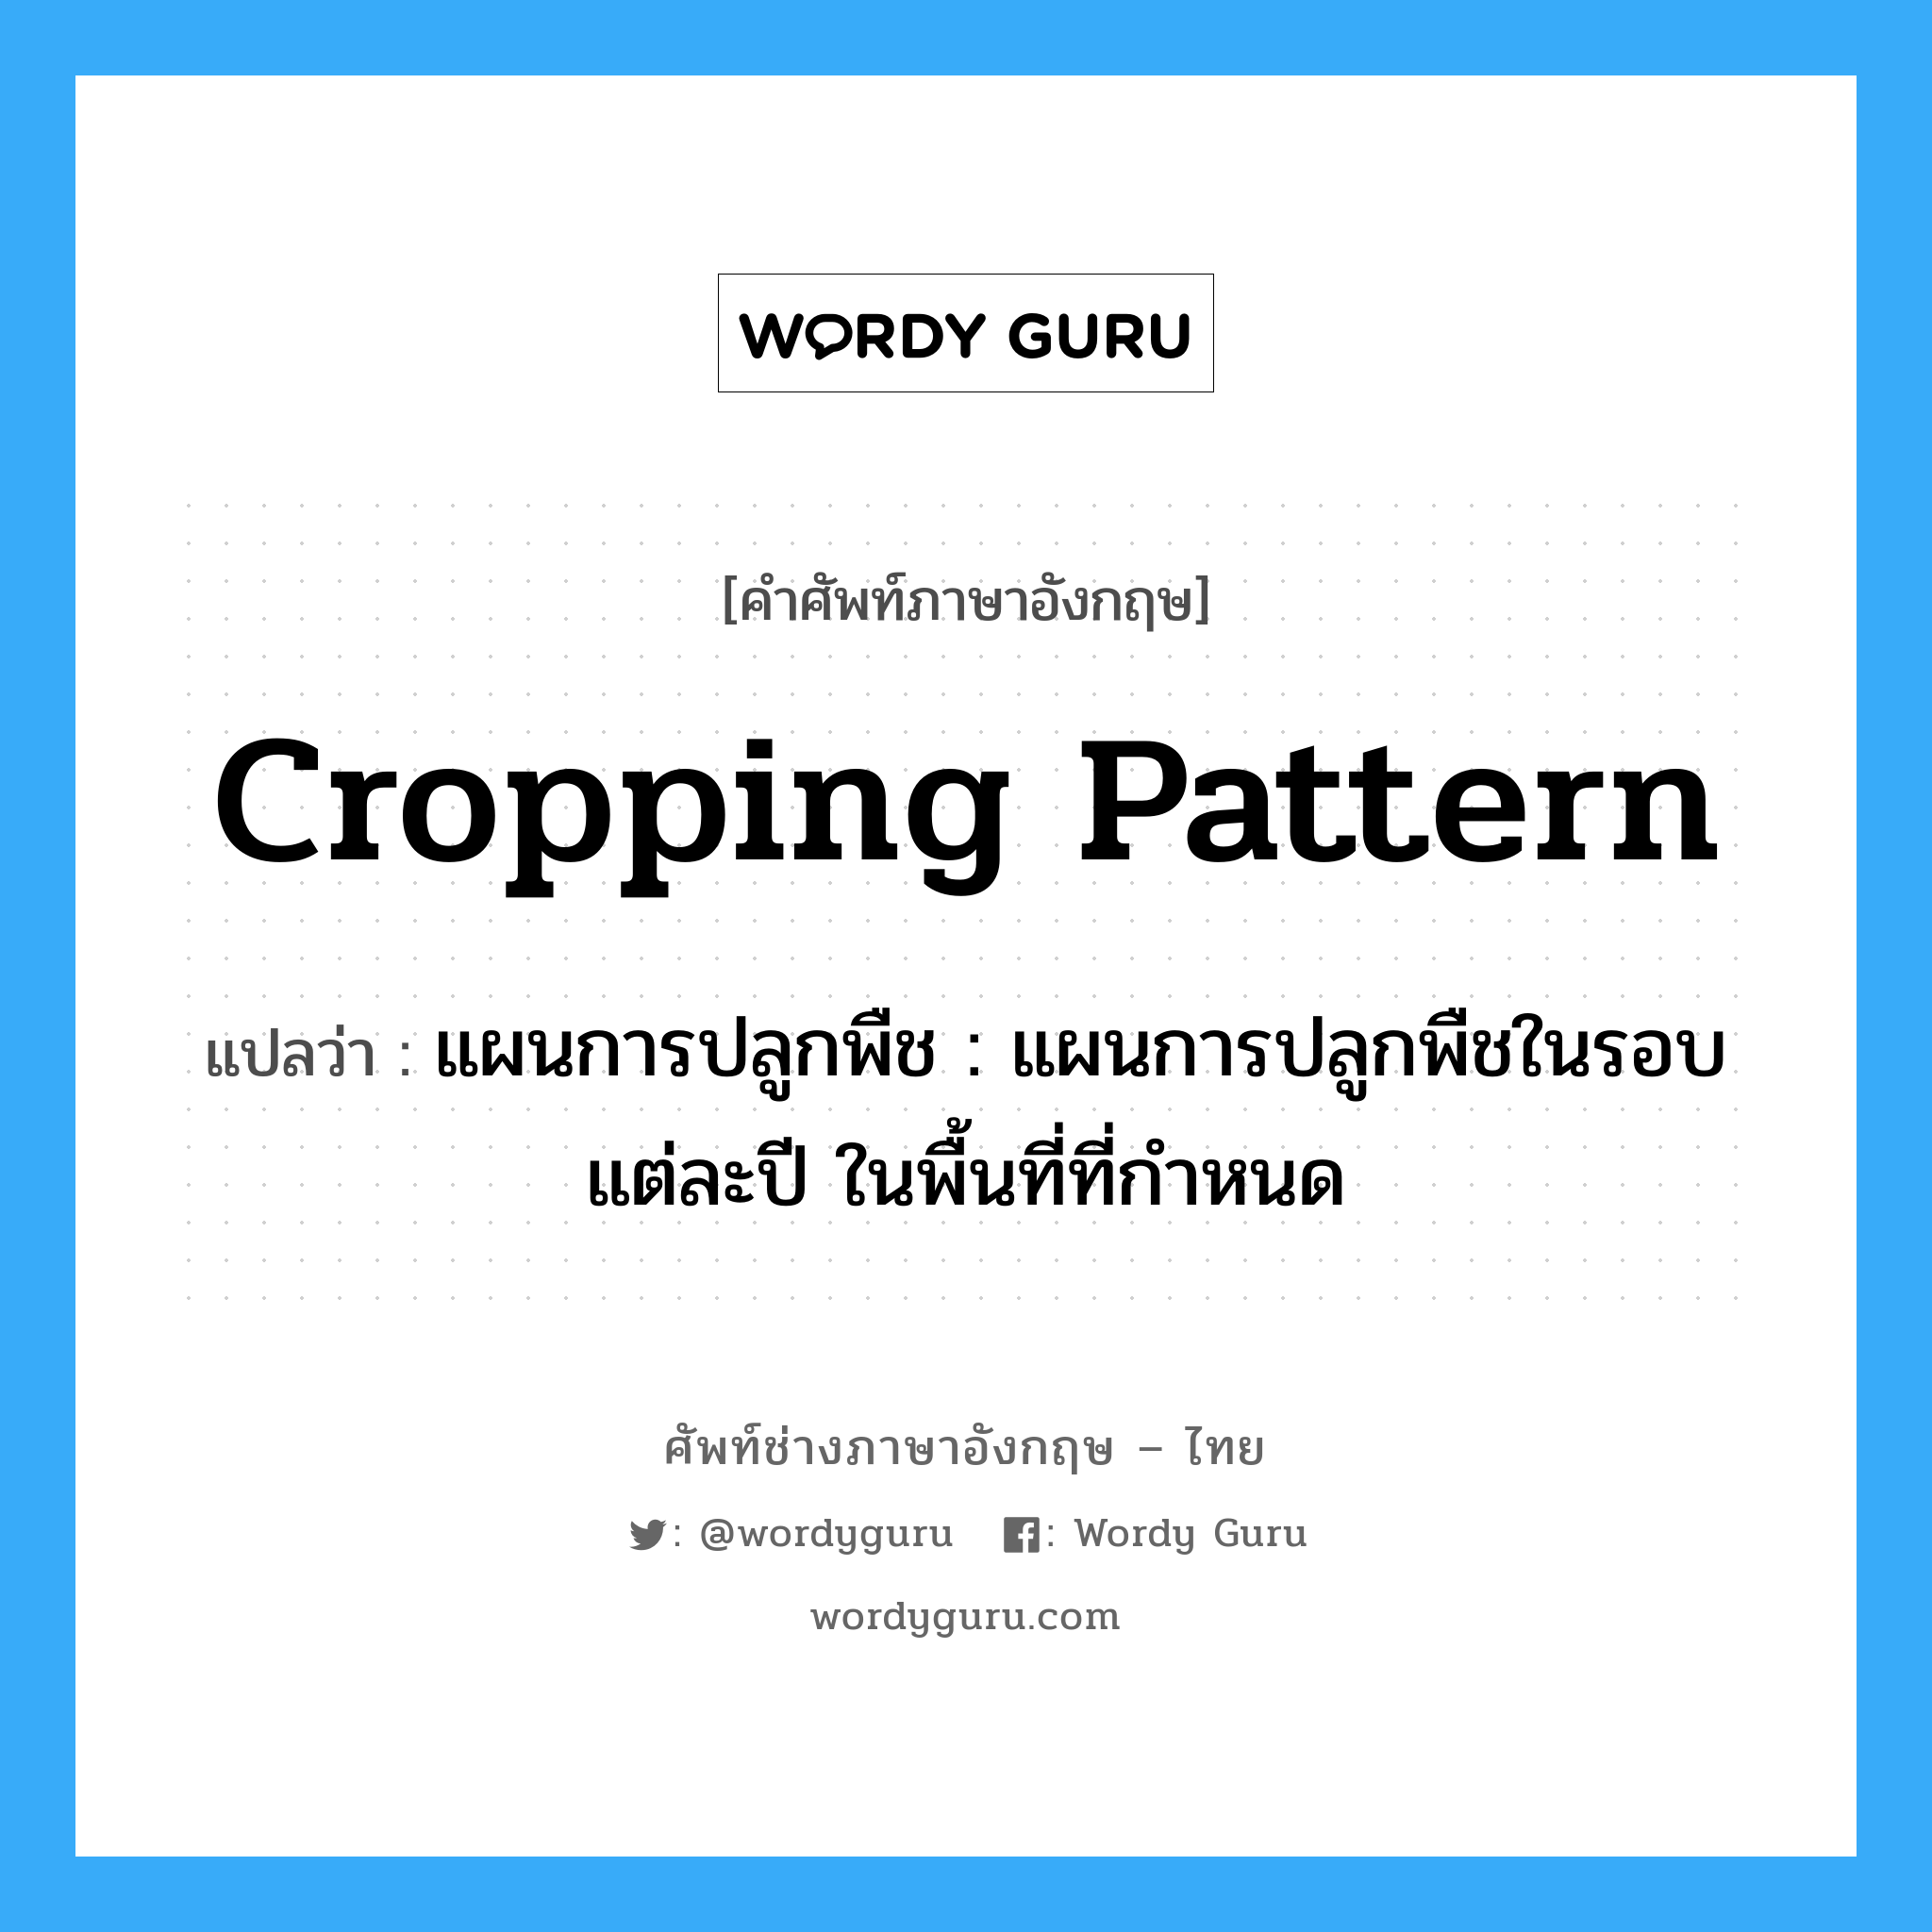 cropping pattern แปลว่า?, คำศัพท์ช่างภาษาอังกฤษ - ไทย cropping pattern คำศัพท์ภาษาอังกฤษ cropping pattern แปลว่า แผนการปลูกพืช : แผนการปลูกพืชในรอบแต่ละปี ในพื้นที่ที่กำหนด